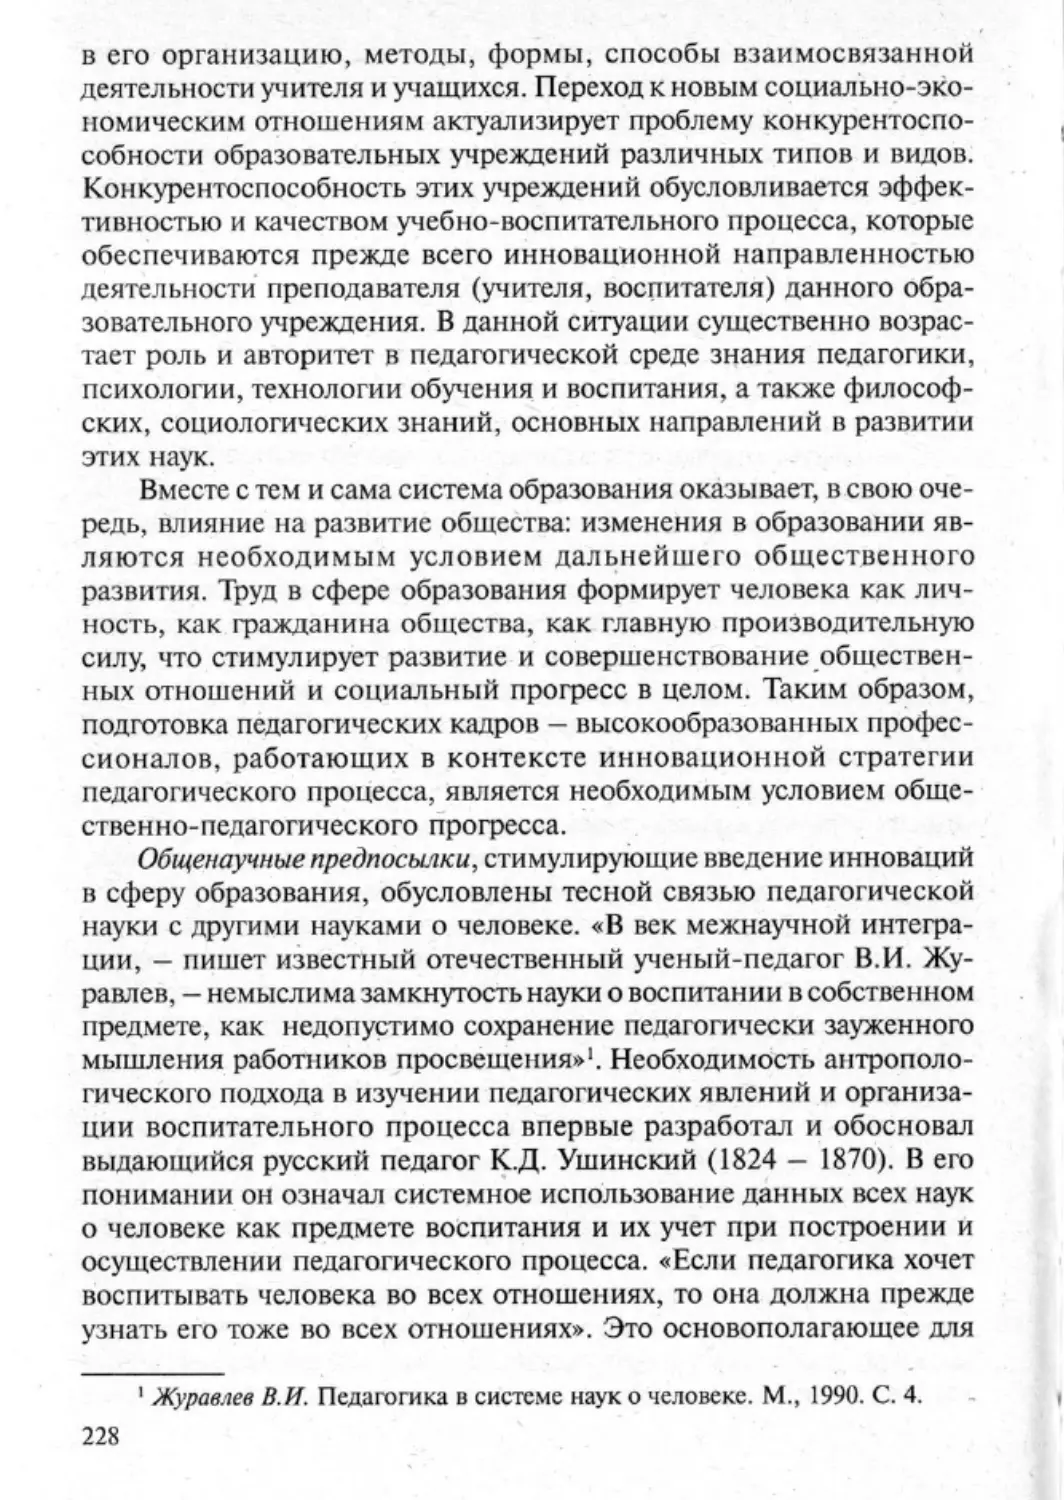 Загрекова Л.В., Николаева В.В - 0229